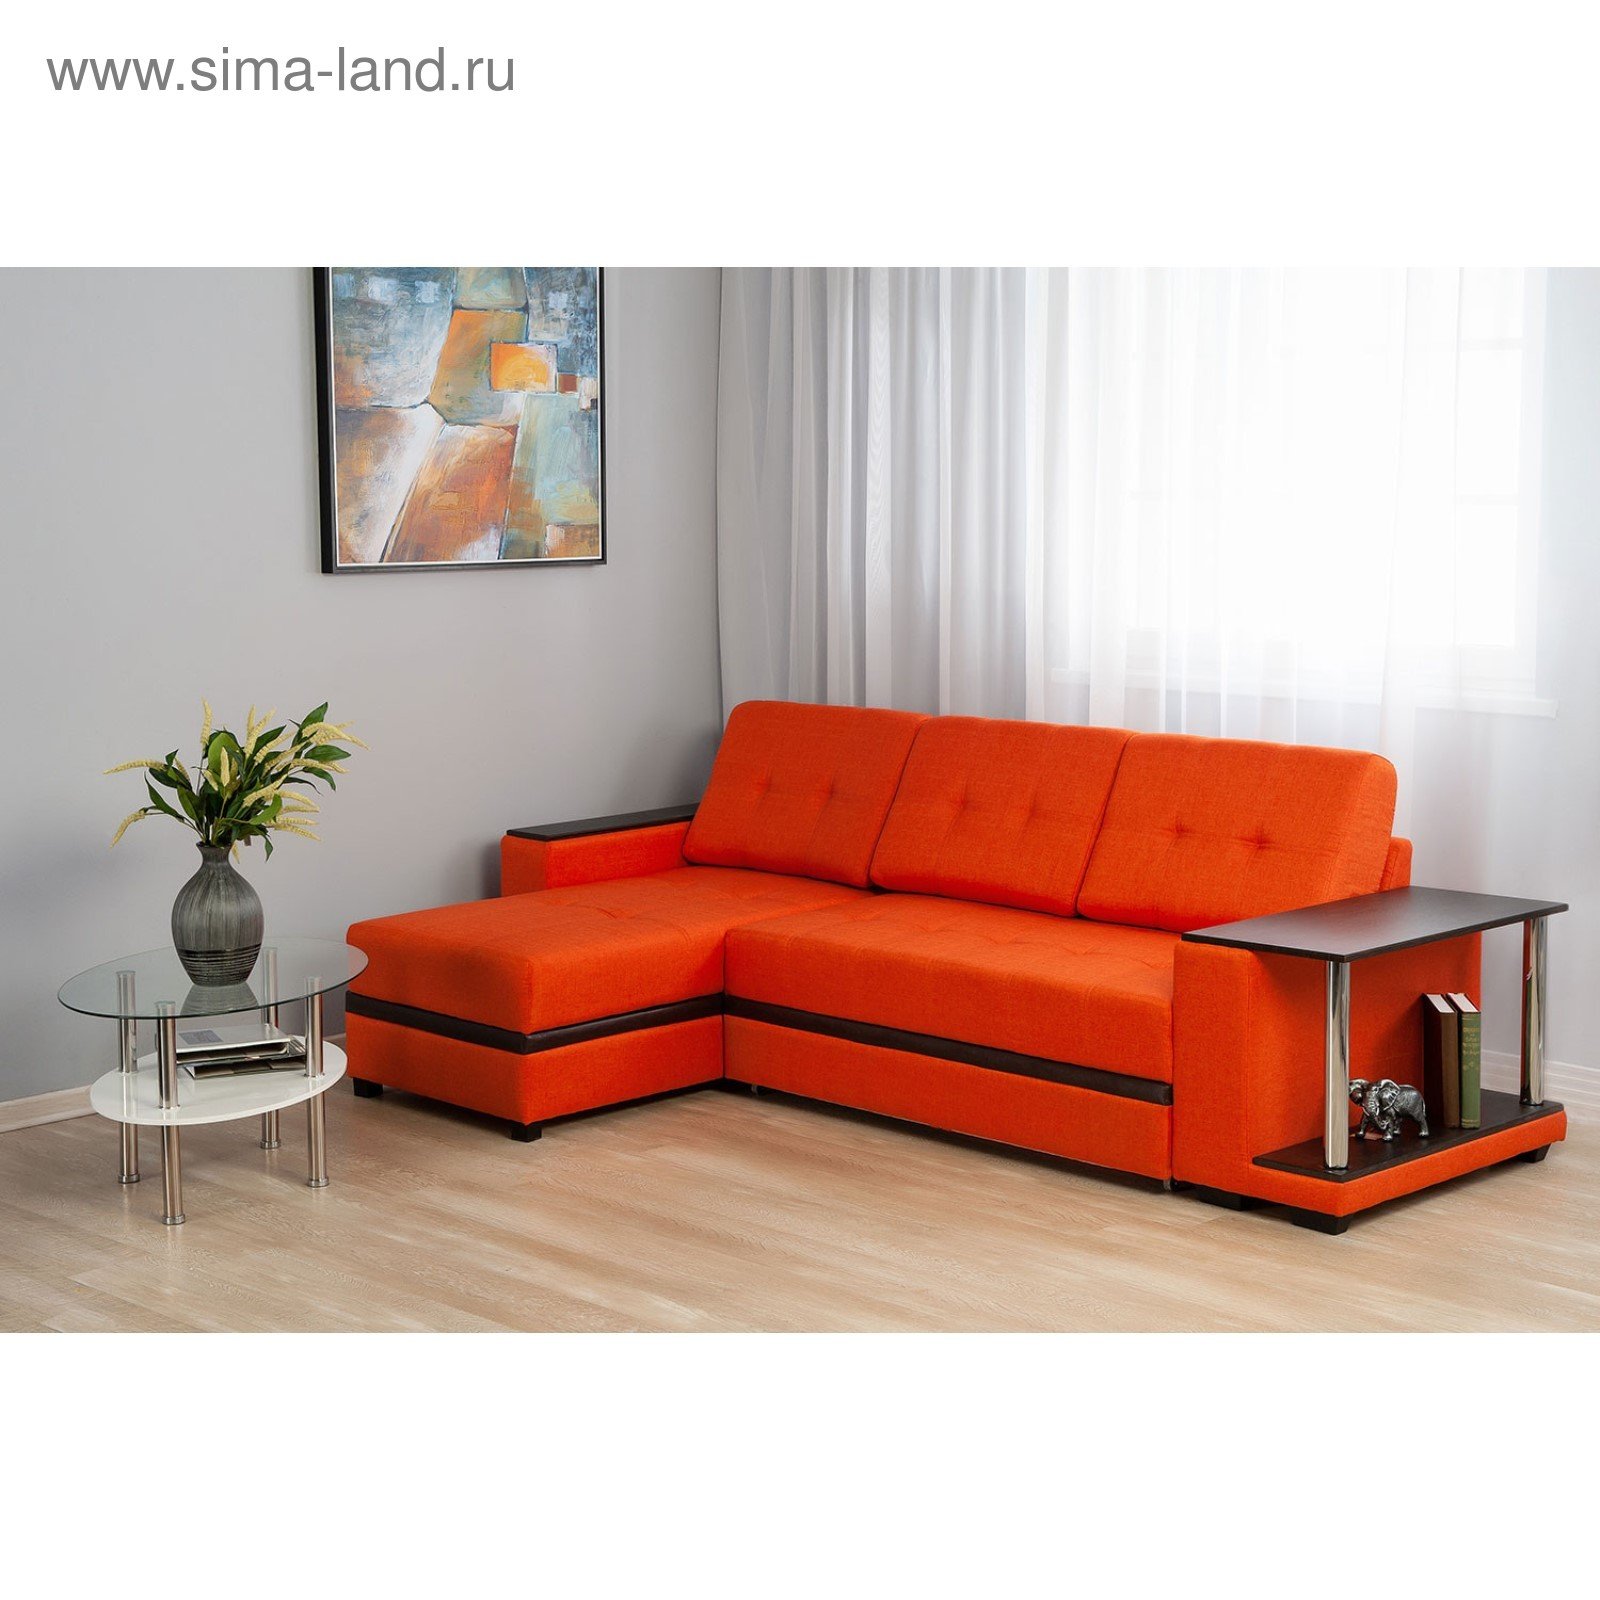 Модели угловых диванов. Диван хофф угловой оранжевый. Диван угловой оранжевый. Угловой диван оранжевого цвета. Маленький угловой диван.